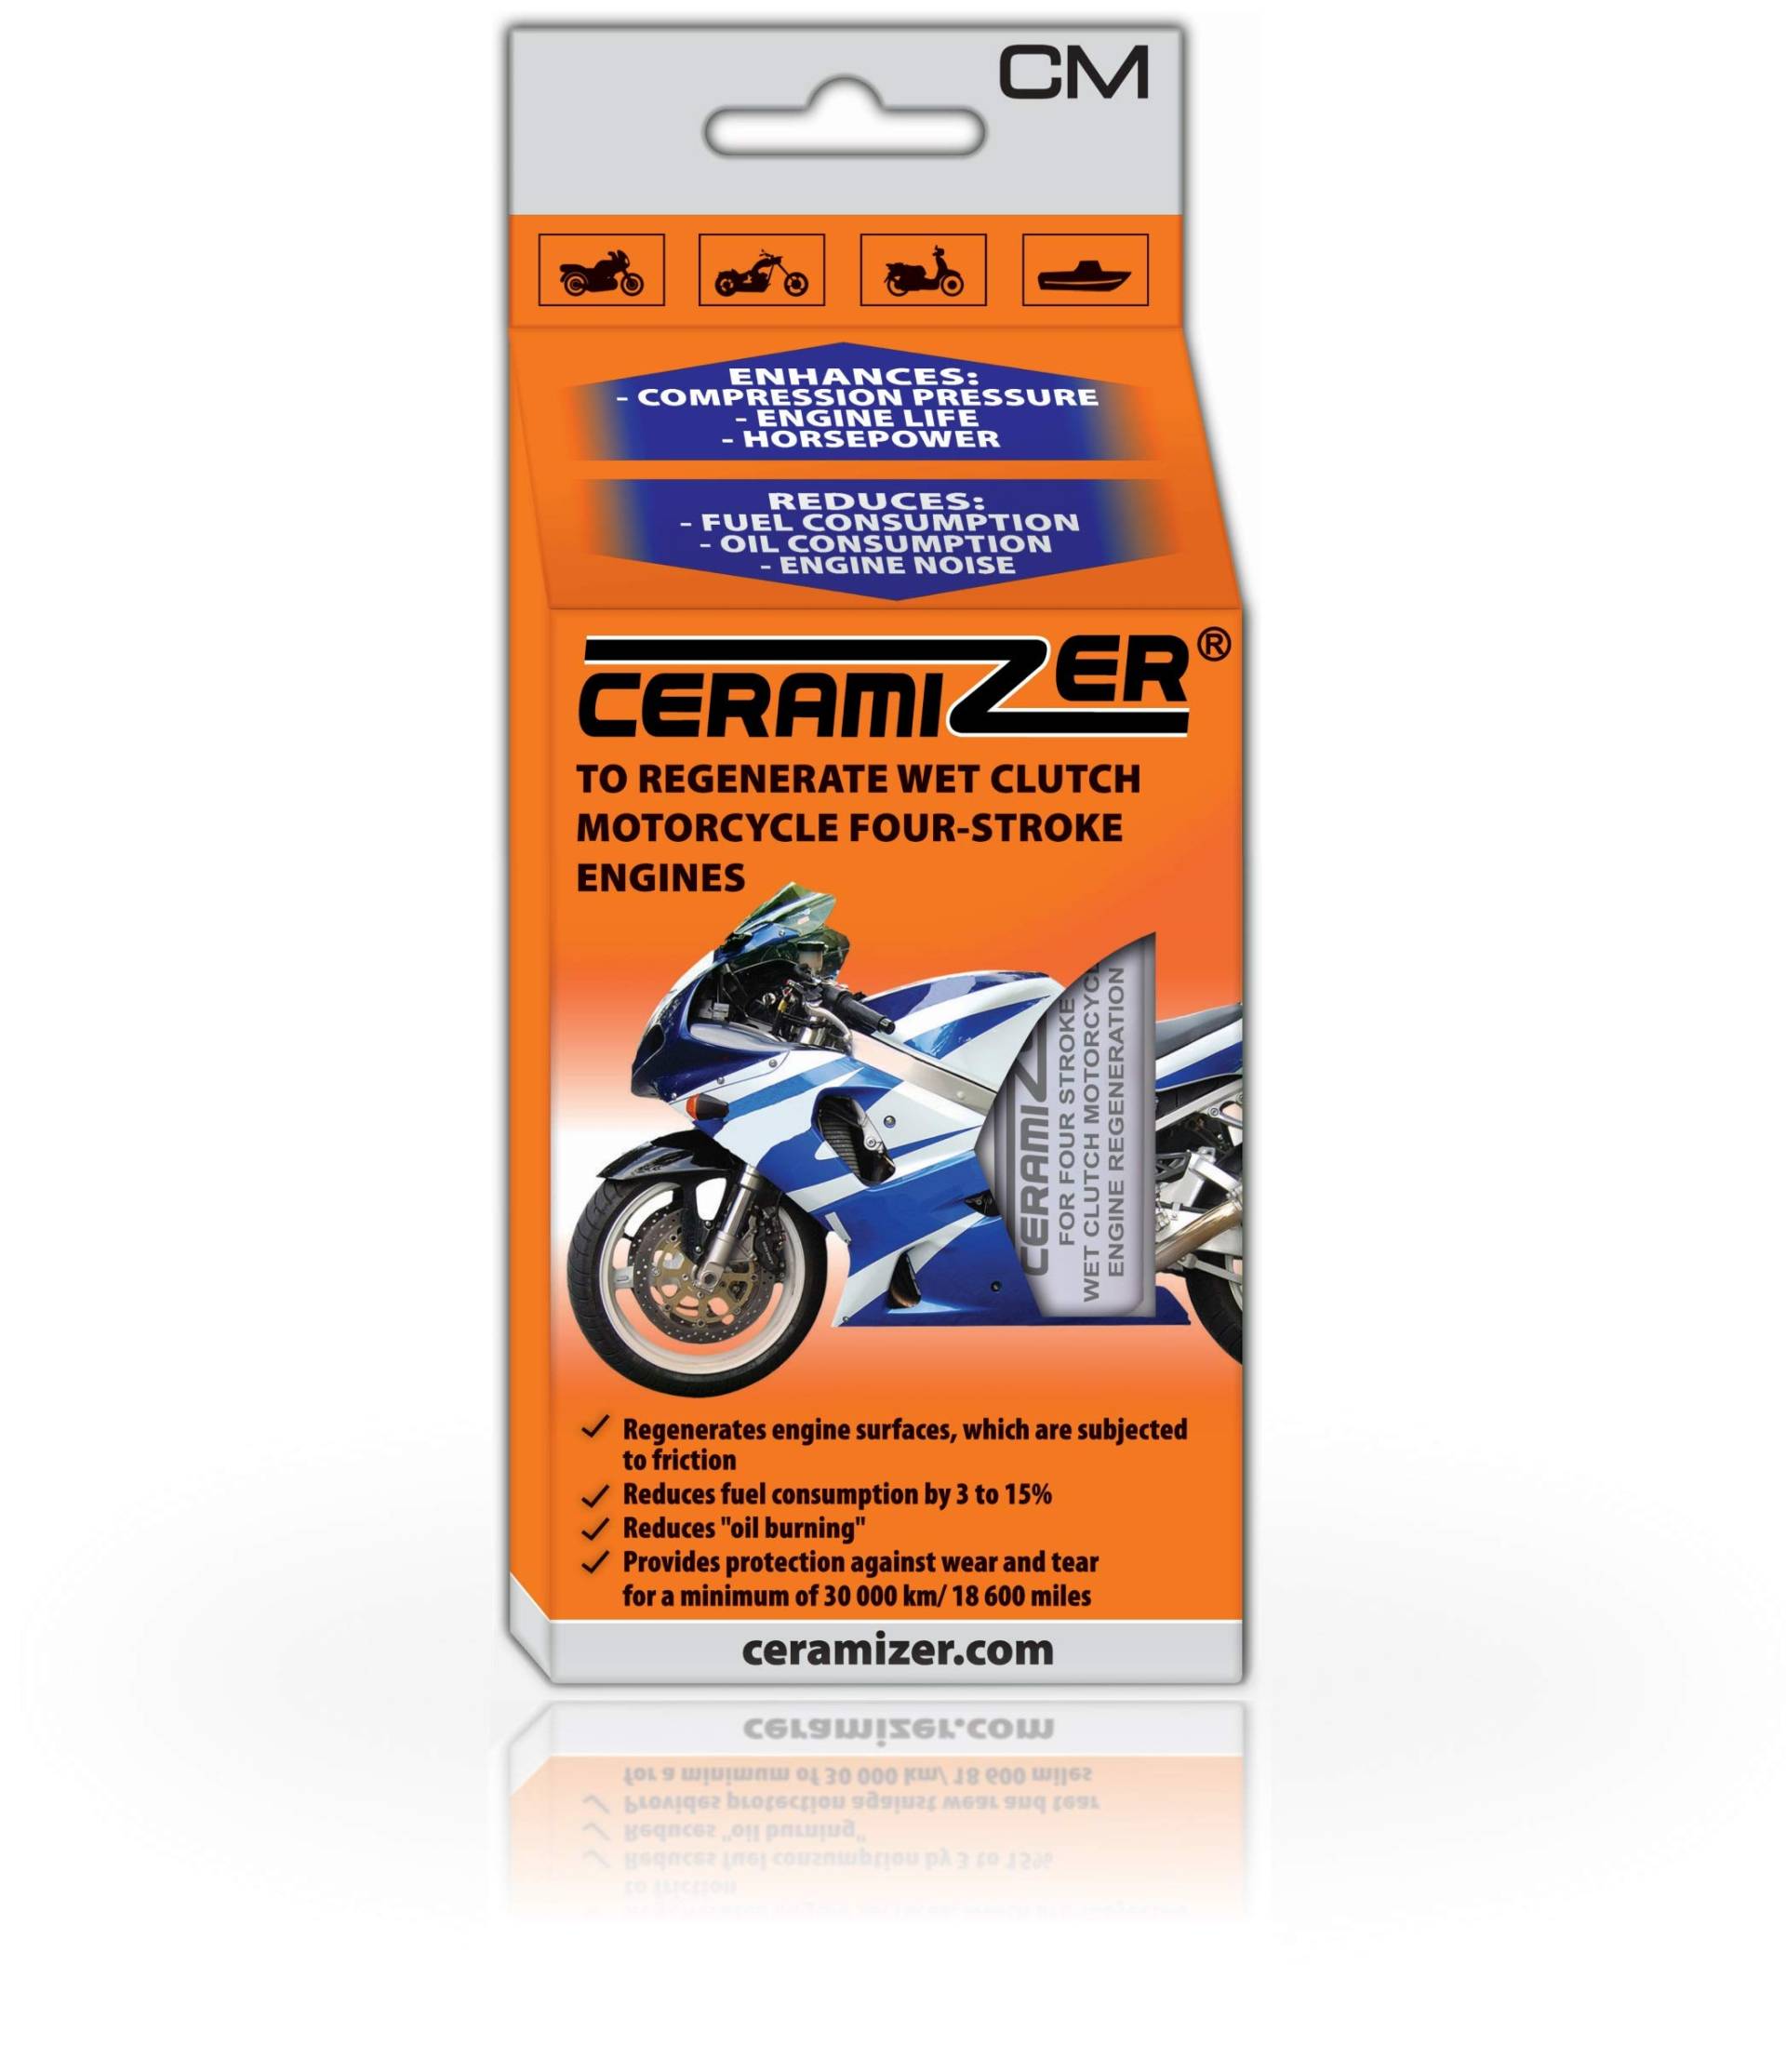 CERAMIZER CM für Motorräder mit 4Takt Verbrennungsmotor Regeneriert keramik CE von Ceramizer